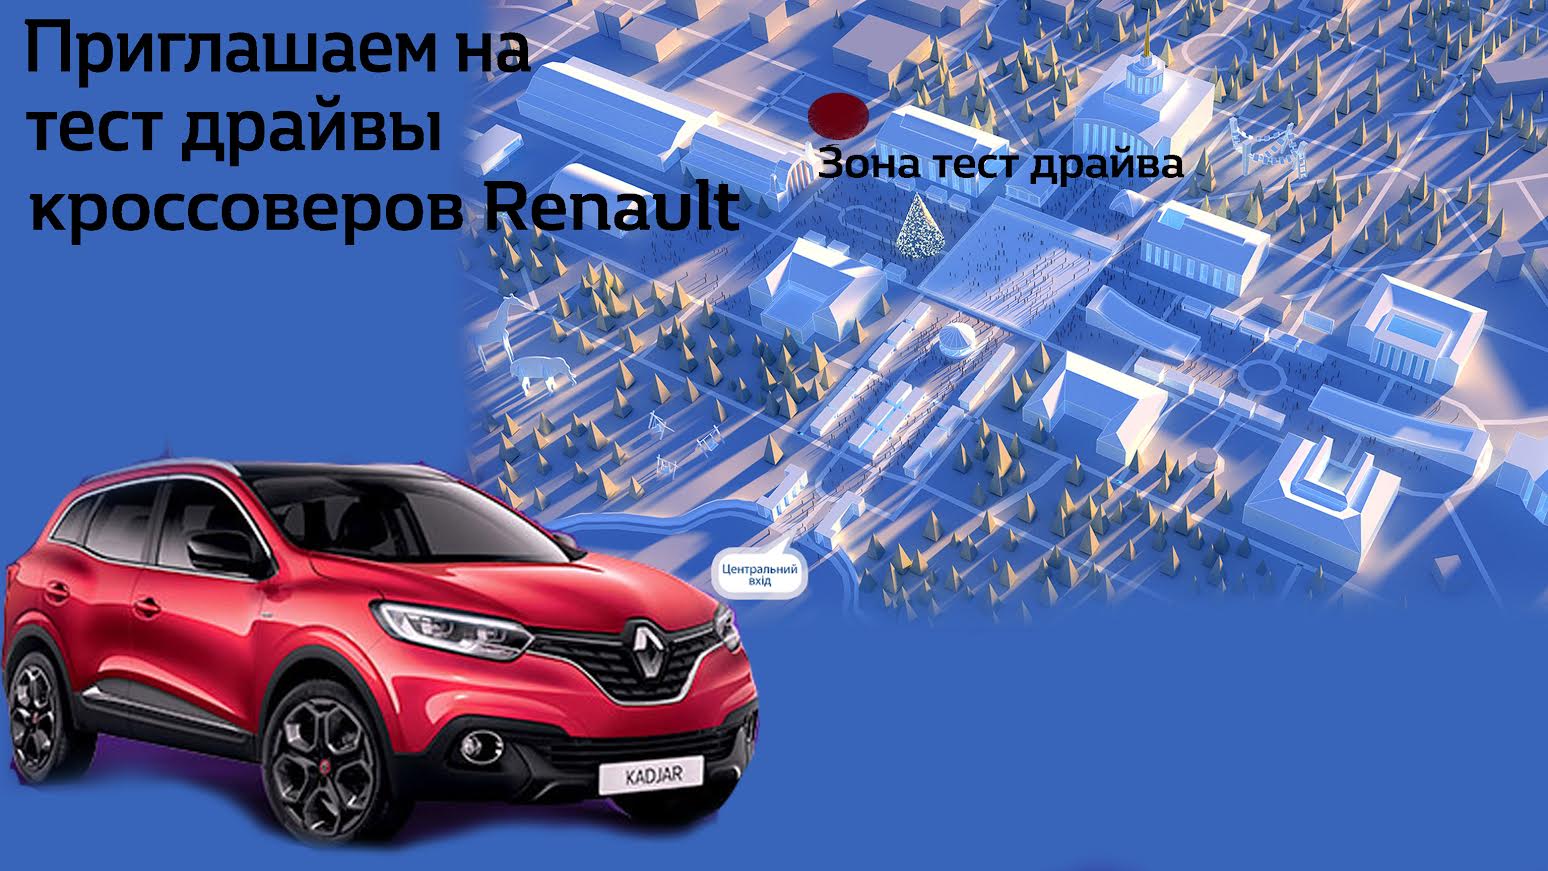 «НИКО Прайм Мегаполис» приглашает 25 декабря на выездные тест-драйвы на кроссоверах Renault на ВДНХ